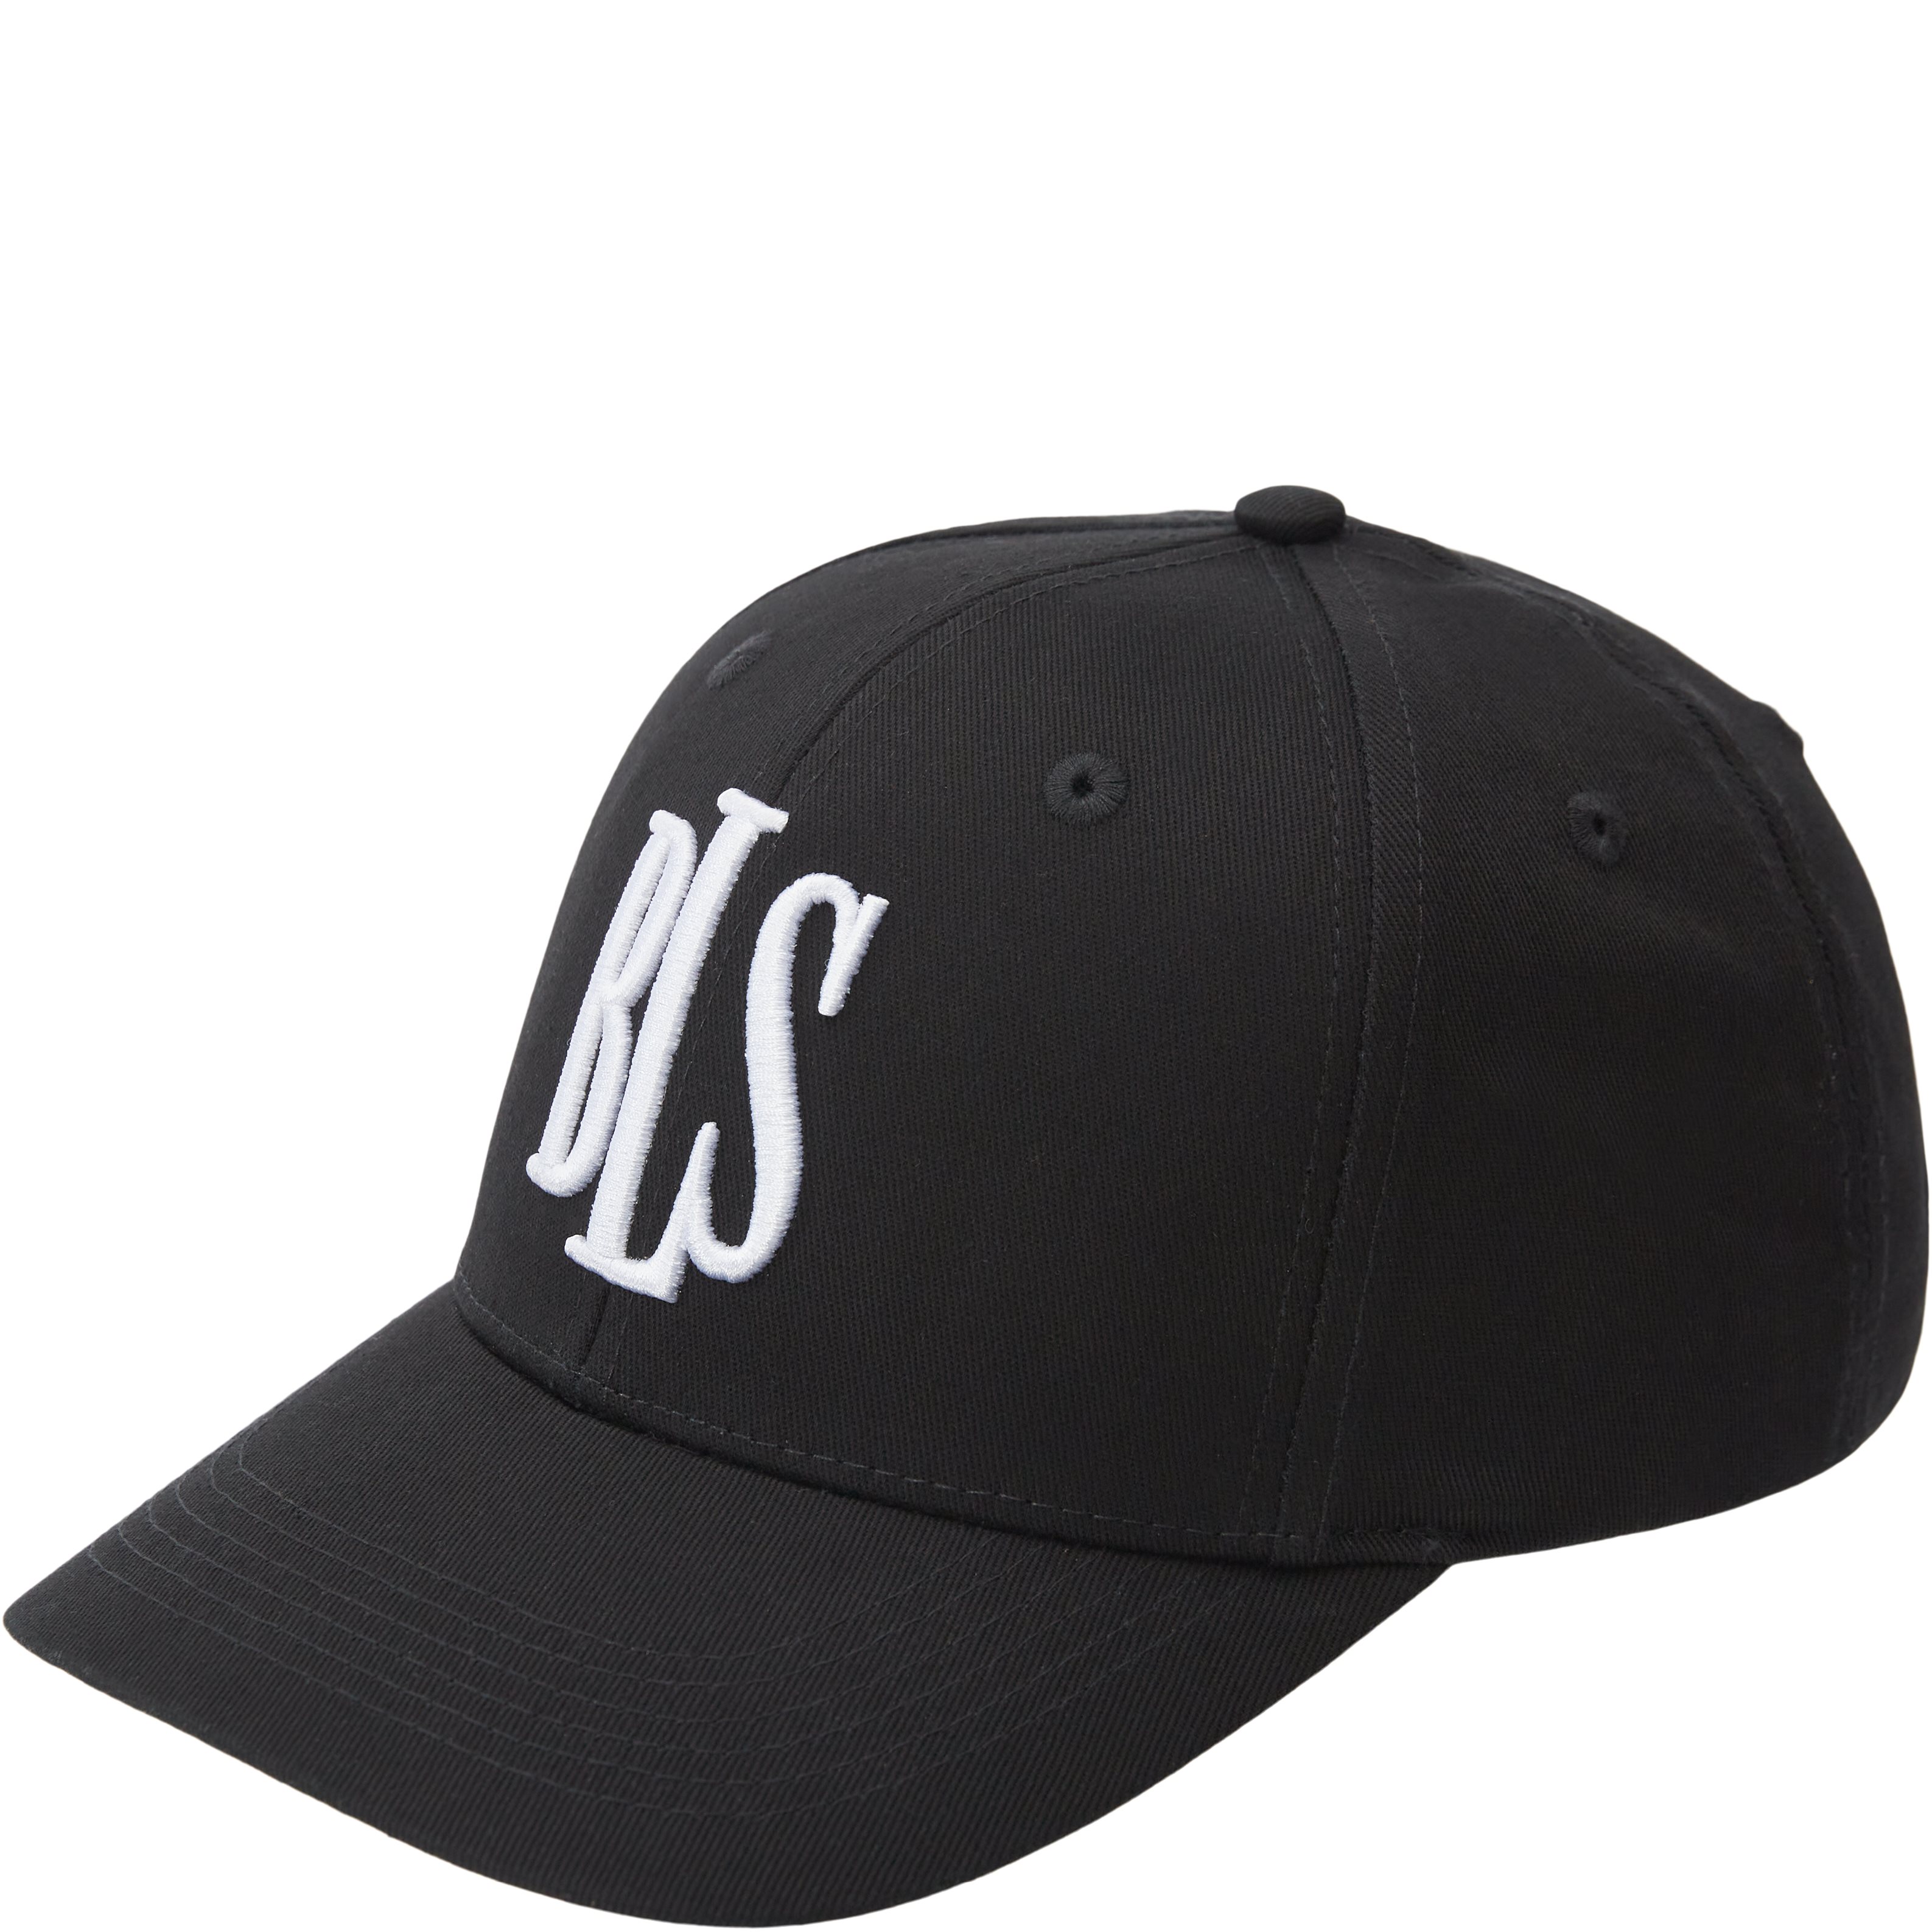 BLS Caps CLASSIC BASEBALL CAP BLACK 99101 Sort